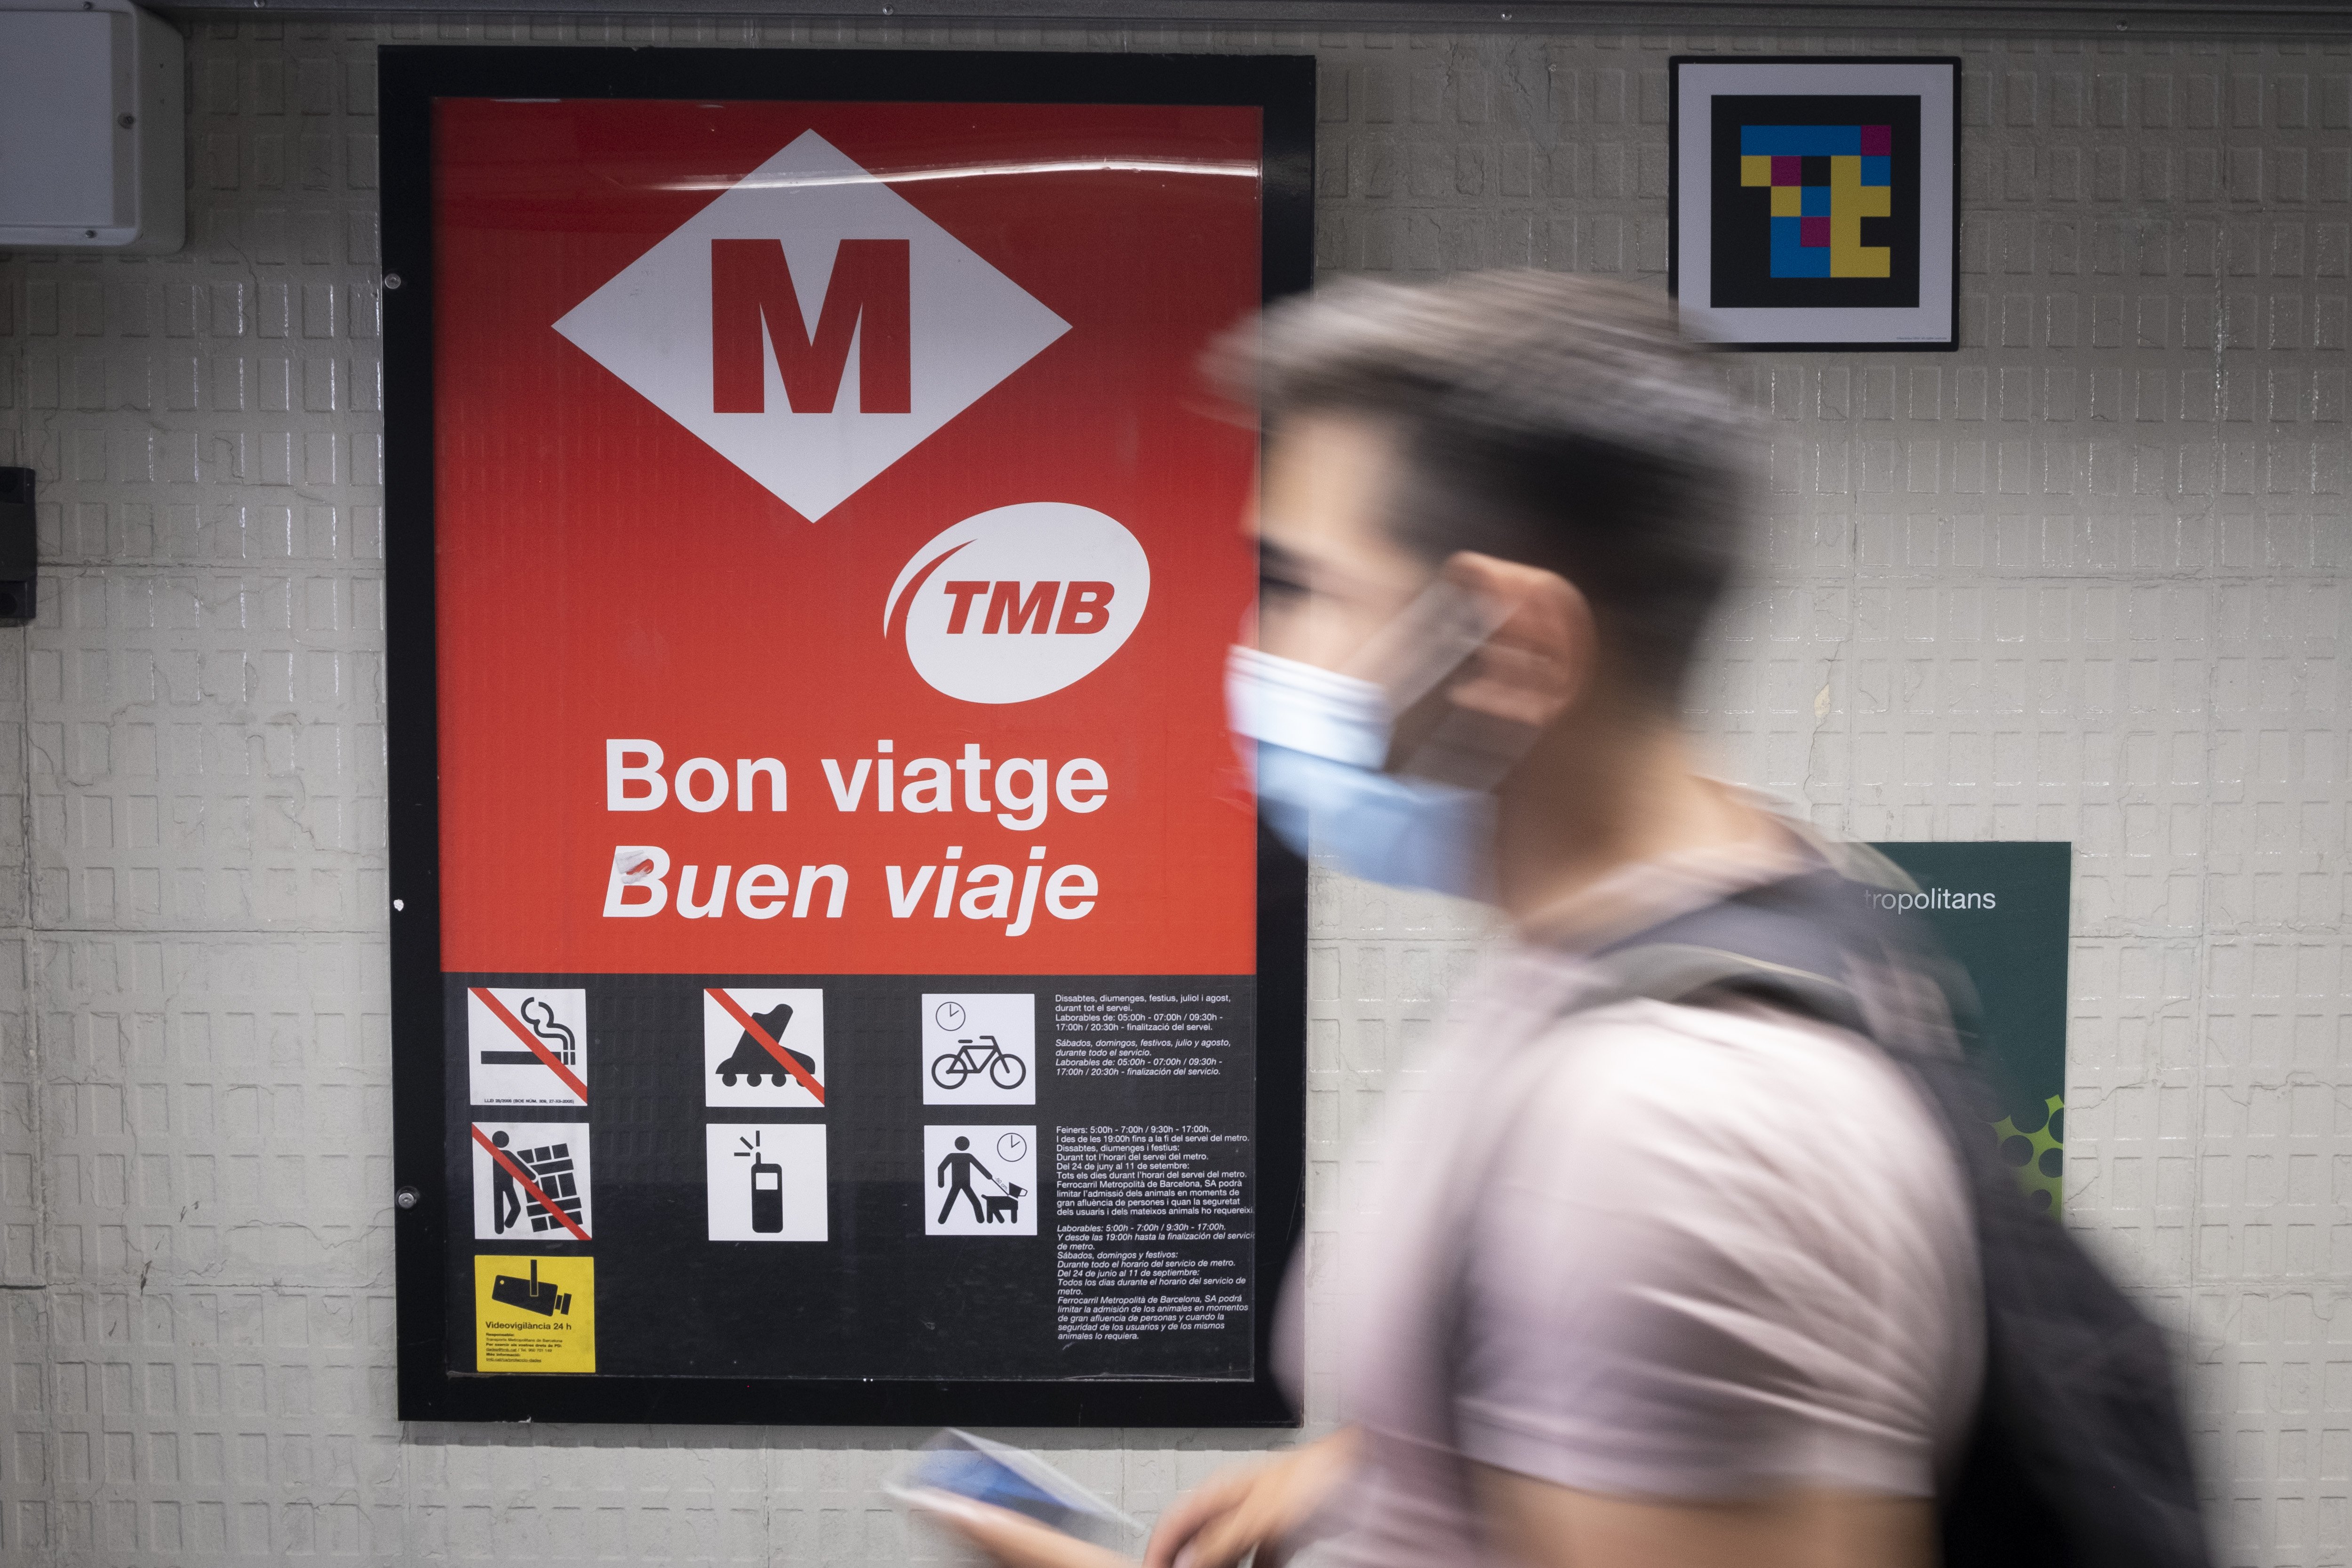 El metro de Barcelona tancarà a les dues els dissabtes per les restriccions